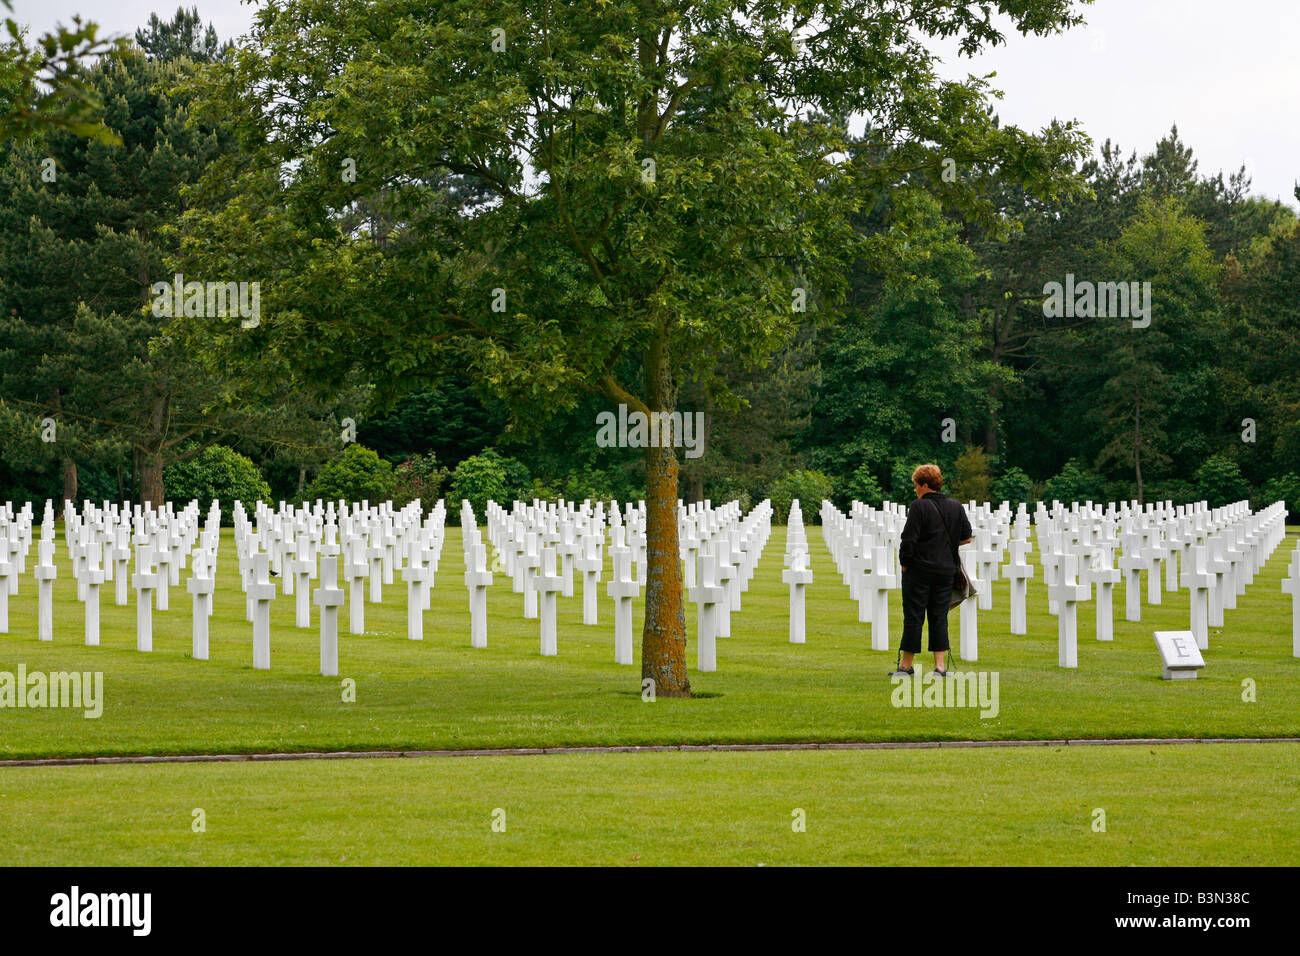 Juillet 2008 - Le cimetière militaire américain de Colleville-sur-mer Normandie France Banque D'Images